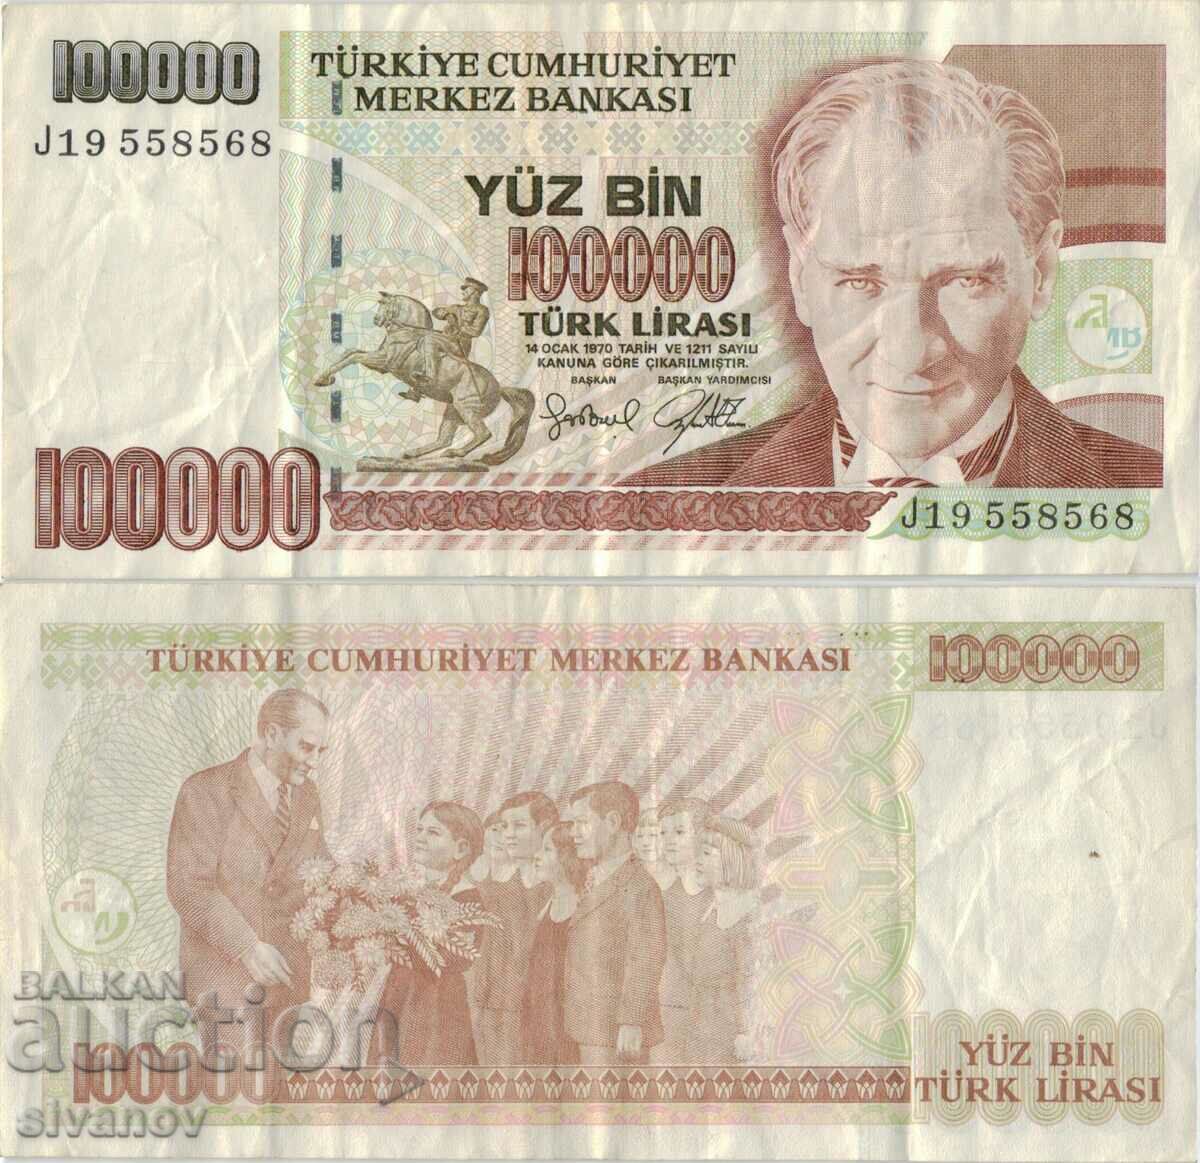 Turkey 100,000 lira 1970 (1995) year banknote #5190